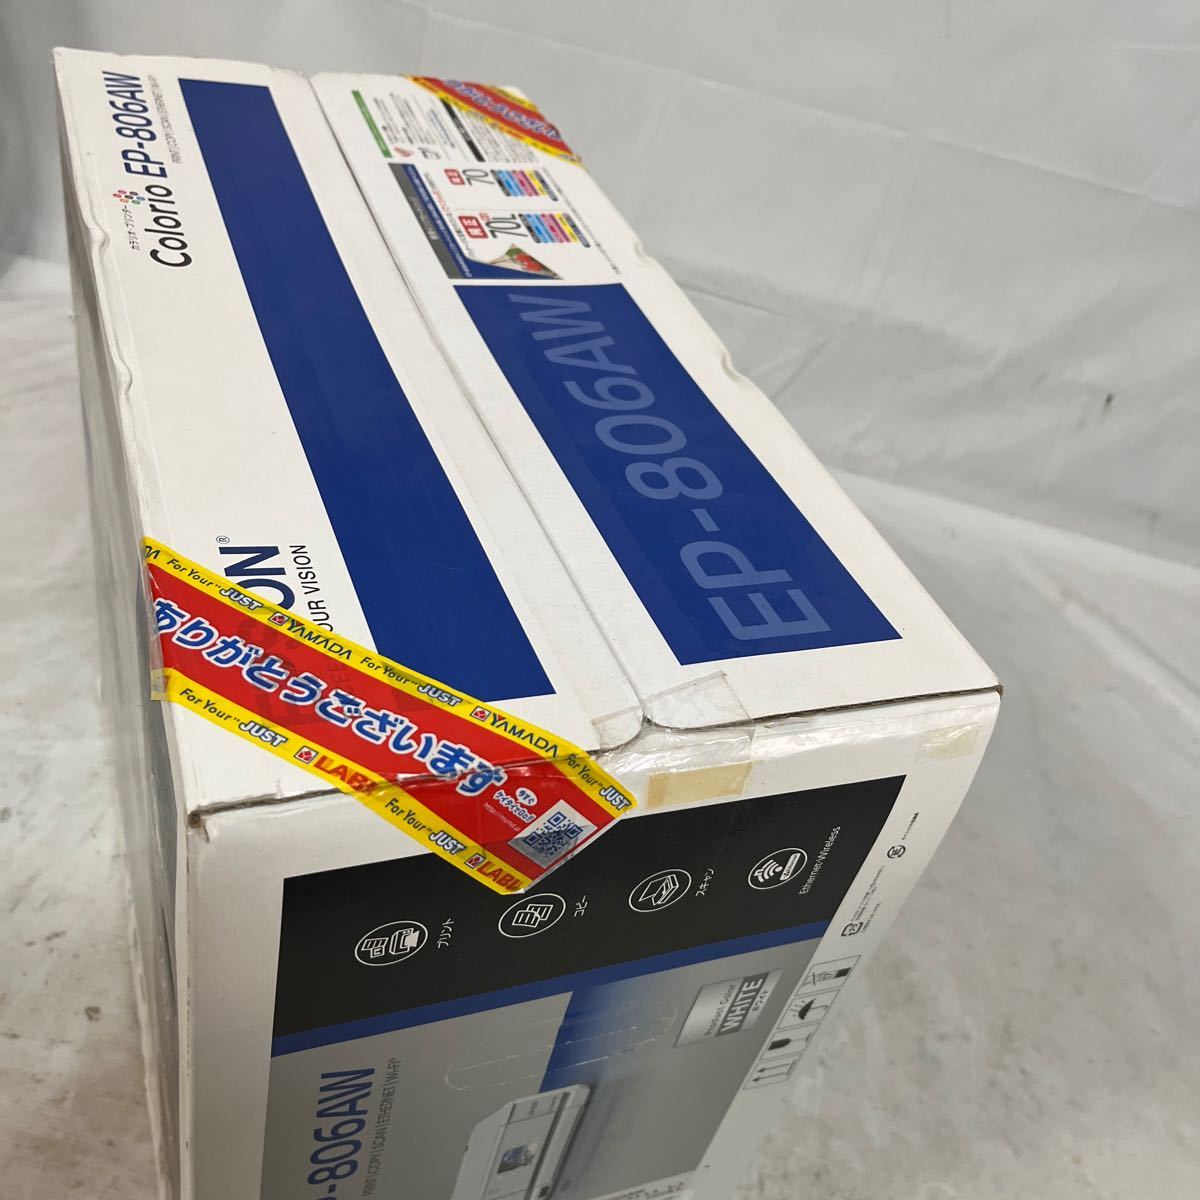 【ジャンク品】EPSON カラリオプリンターEP-806AW。2014年製。箱サイズ約119センチ。未使用品だと思われます_画像3